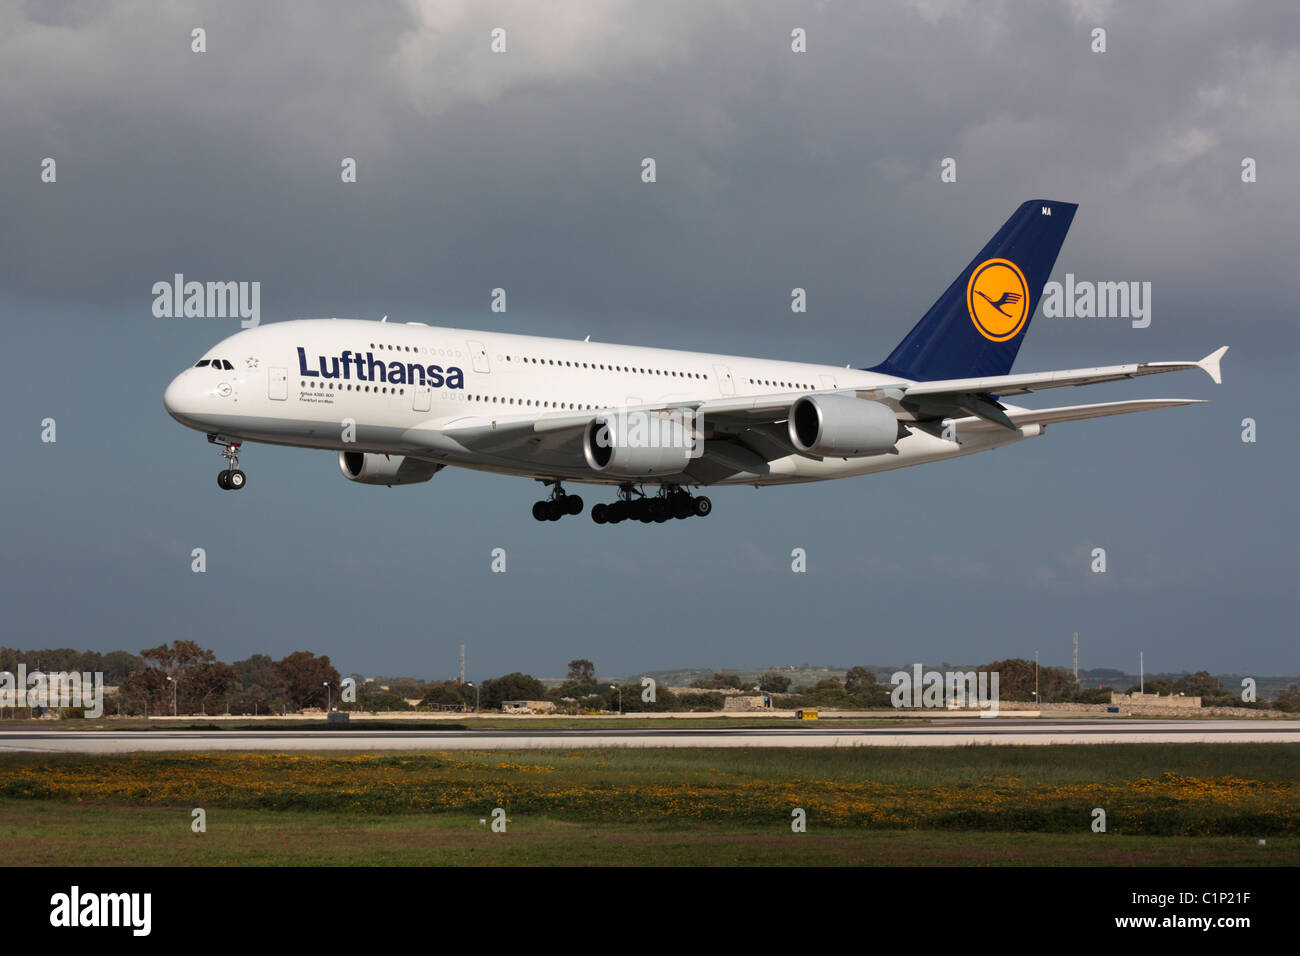 Le transport aérien commercial. Lufthansa Airbus A380 grand avion de gros porteurs à l'arrivée à Malte. Vue latérale montrant la conception à double étage de cet avion. Banque D'Images